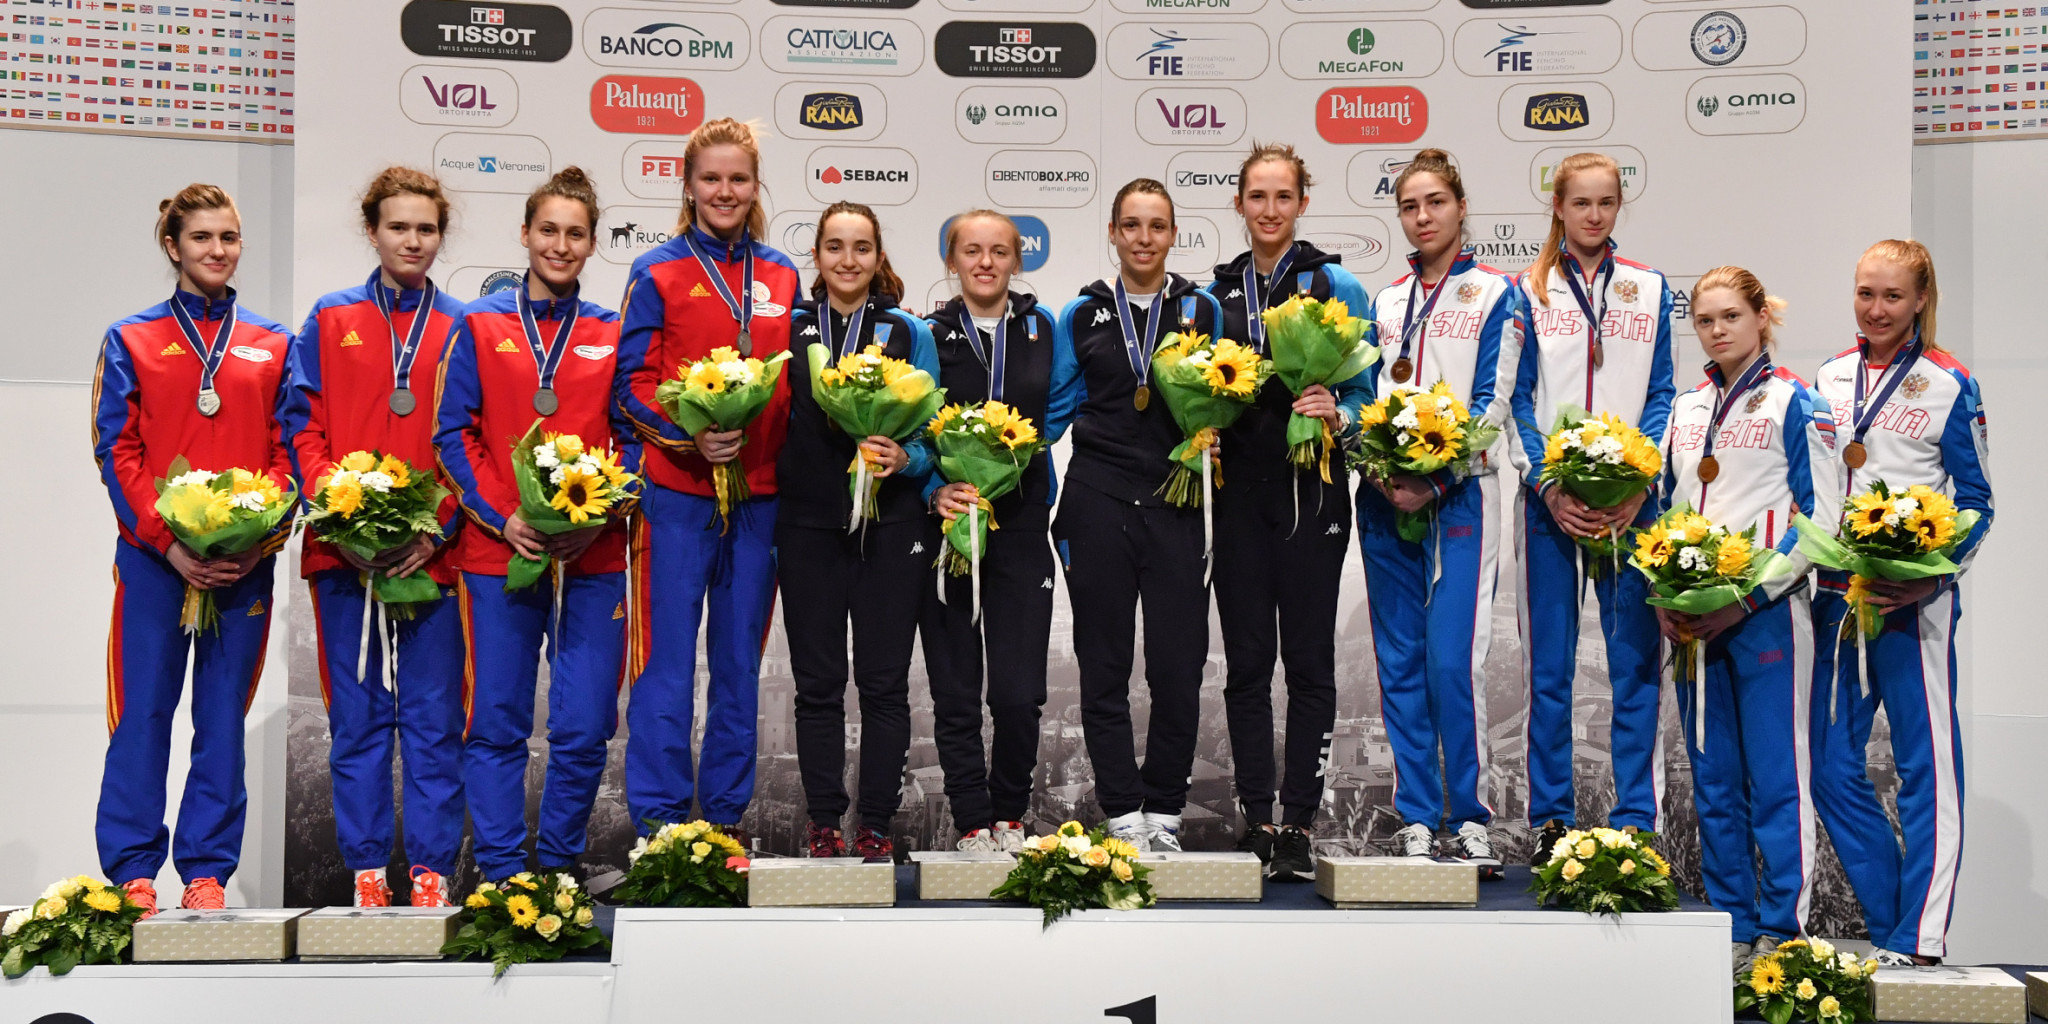 Italy won women's team gold on home soil ©FIE